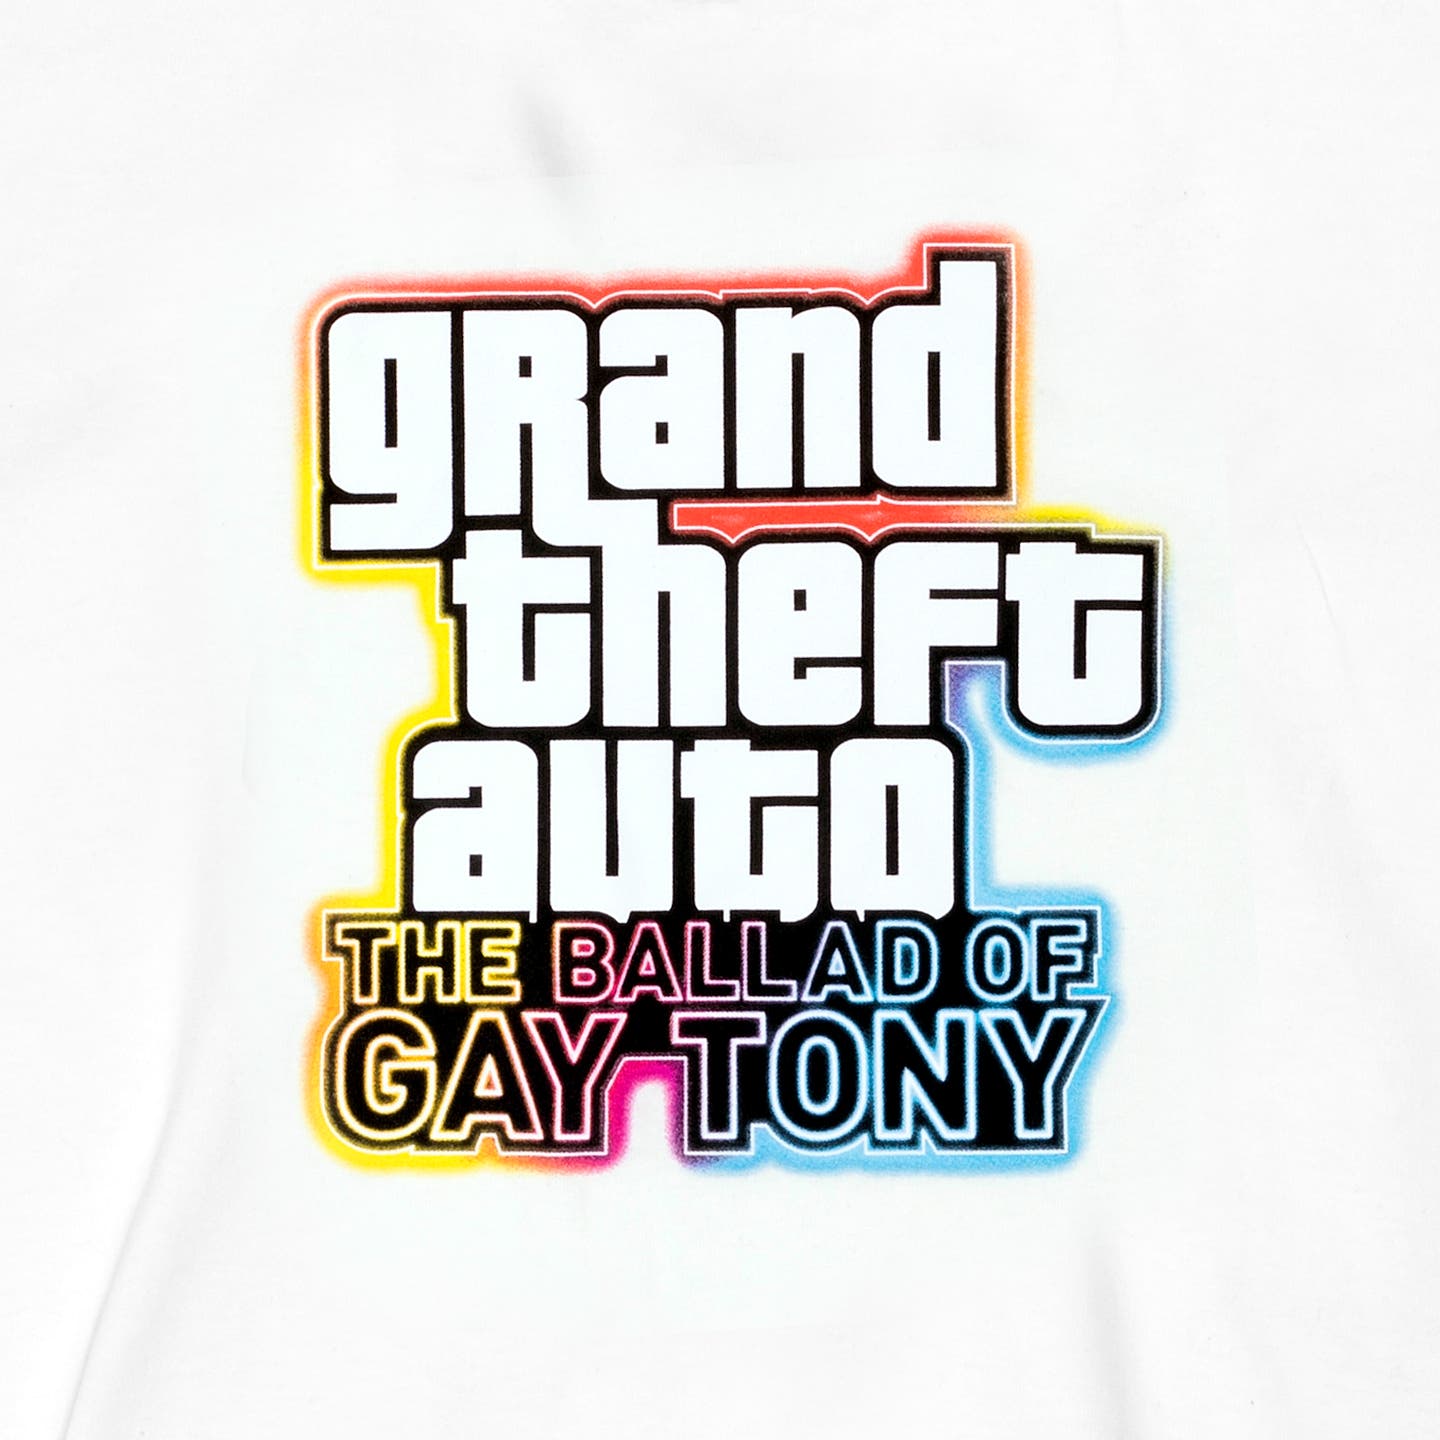 b-gay-tony-g-t-auto-v-game-p-white-t-s-nos-u-sz-md-us-17-90-destaquepopular-br